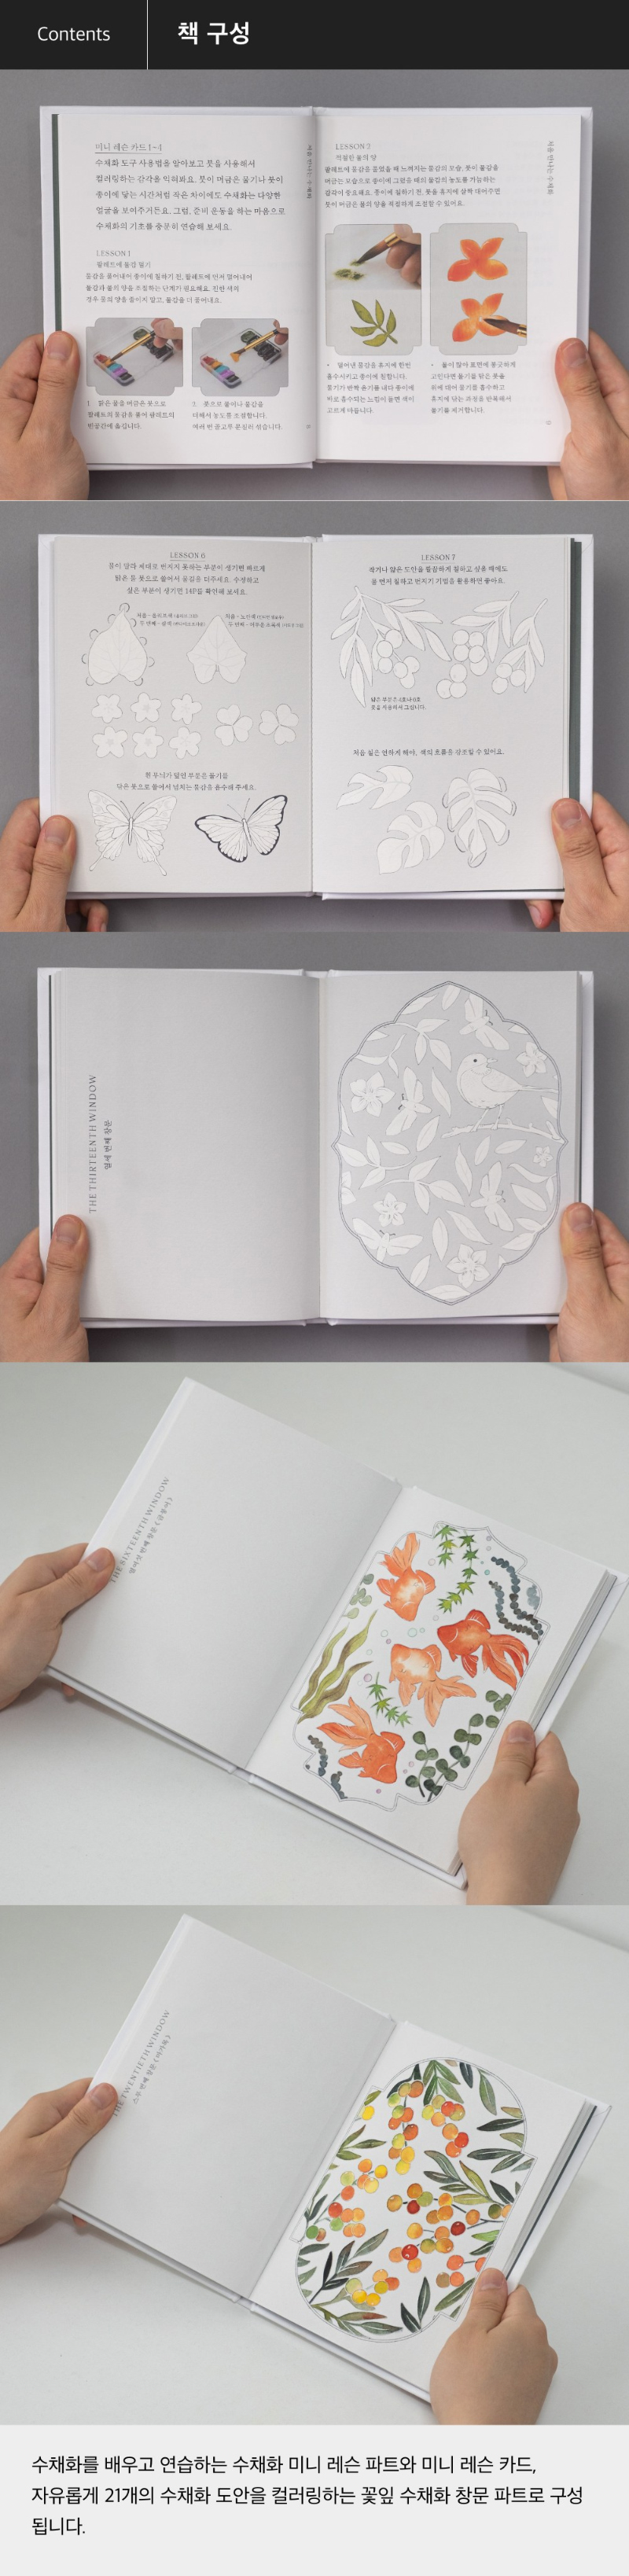 버드인페이지 꽃잎 수채화 하얀 키트 책 구성안내